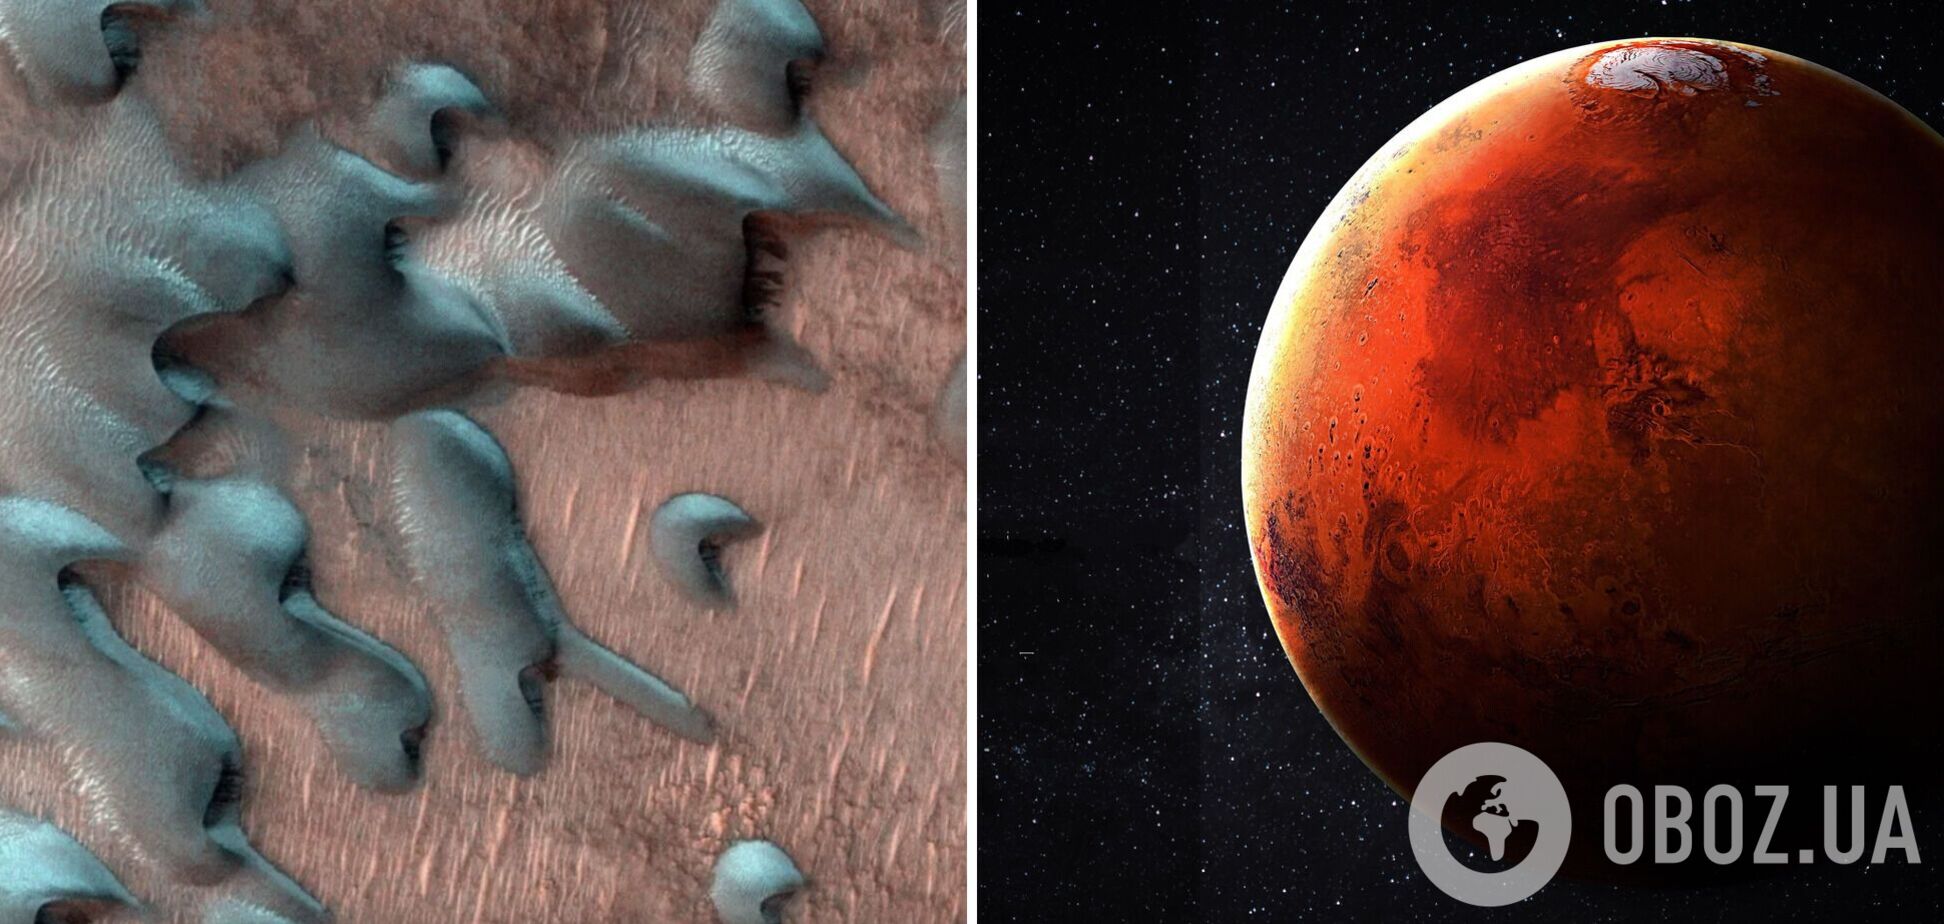 Человечество уже нашло жизнь на Марсе, но могло случайно убить ее